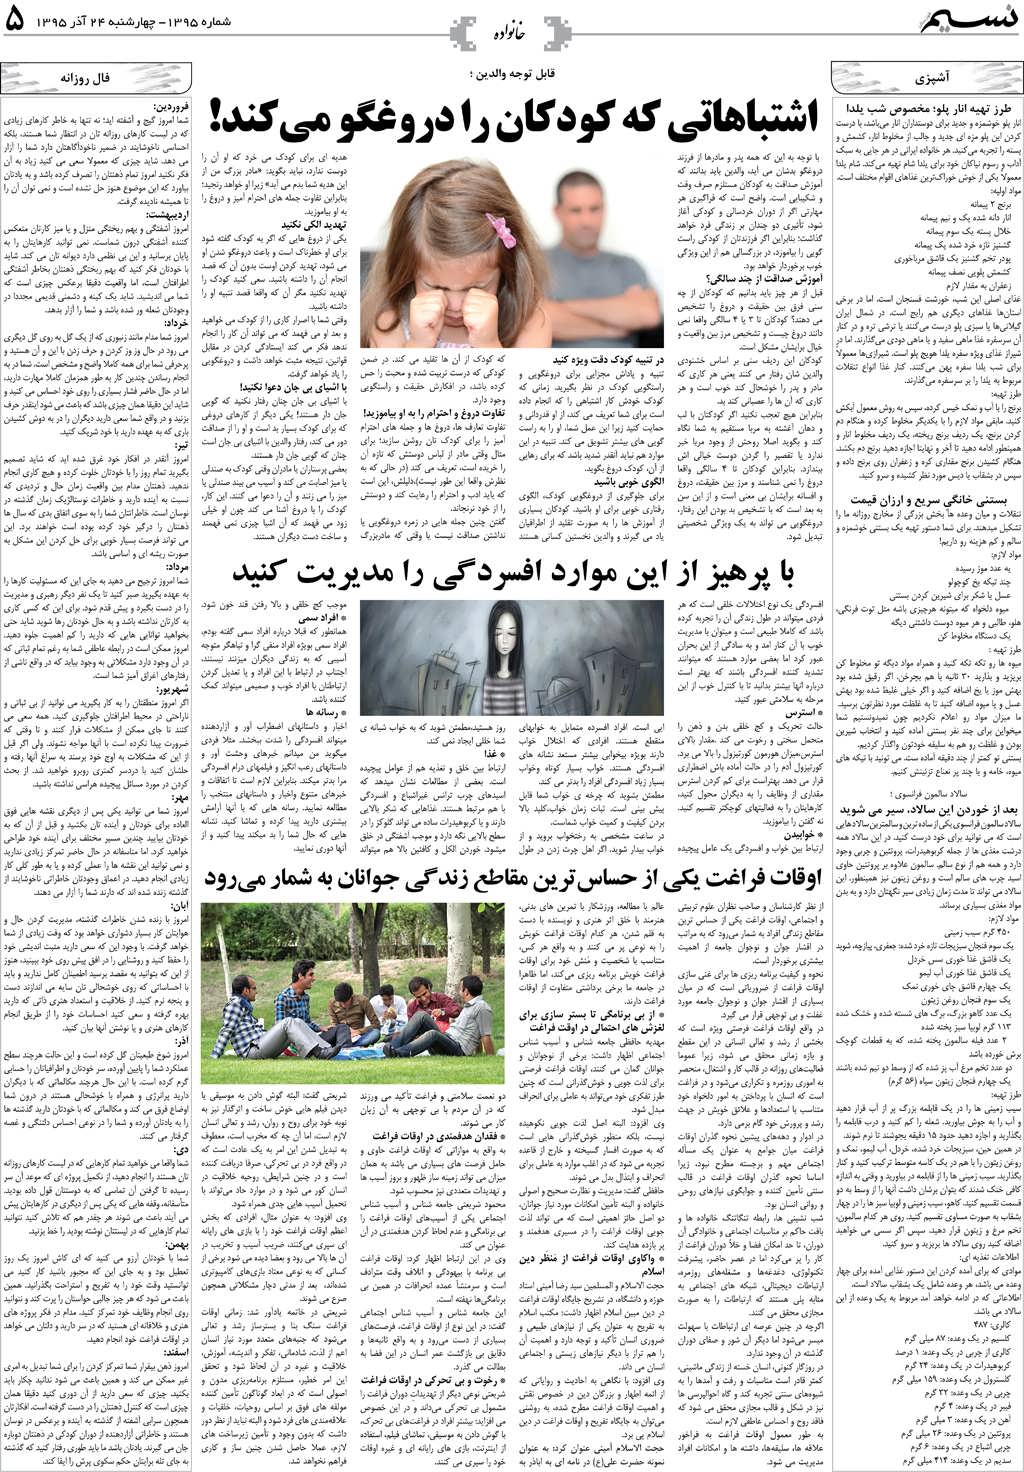 صفحه خانواده روزنامه نسیم شماره 1395